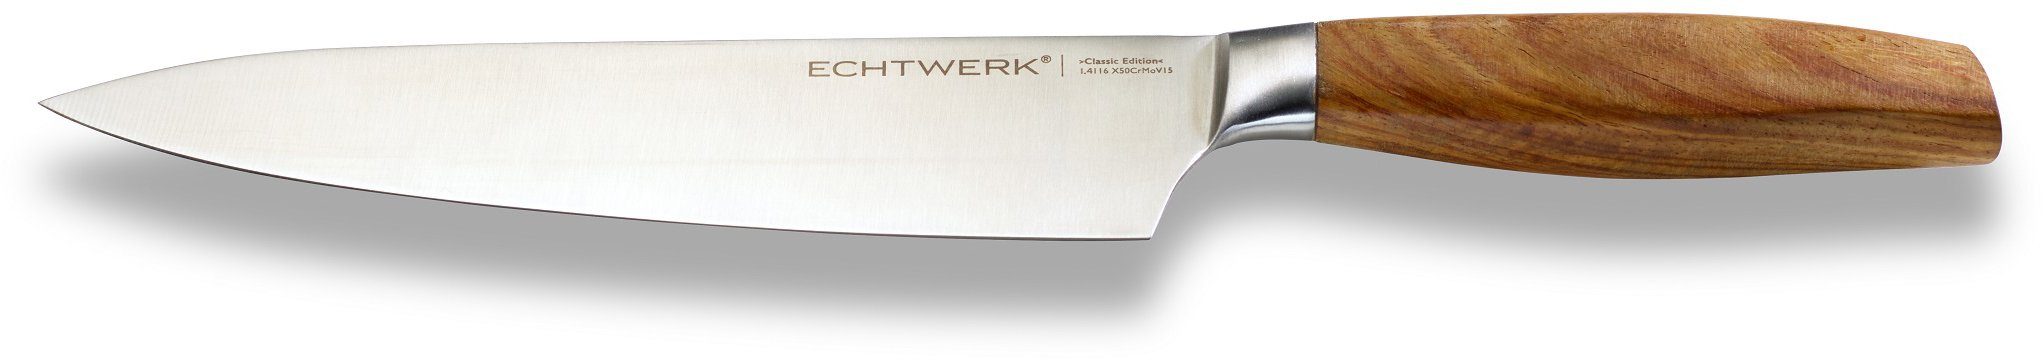 ECHTWERK Kochmesser Classic Edition, Küchenmesser, Edelstahl, Klingenlänge 20 cm, Griff aus Akazienholz